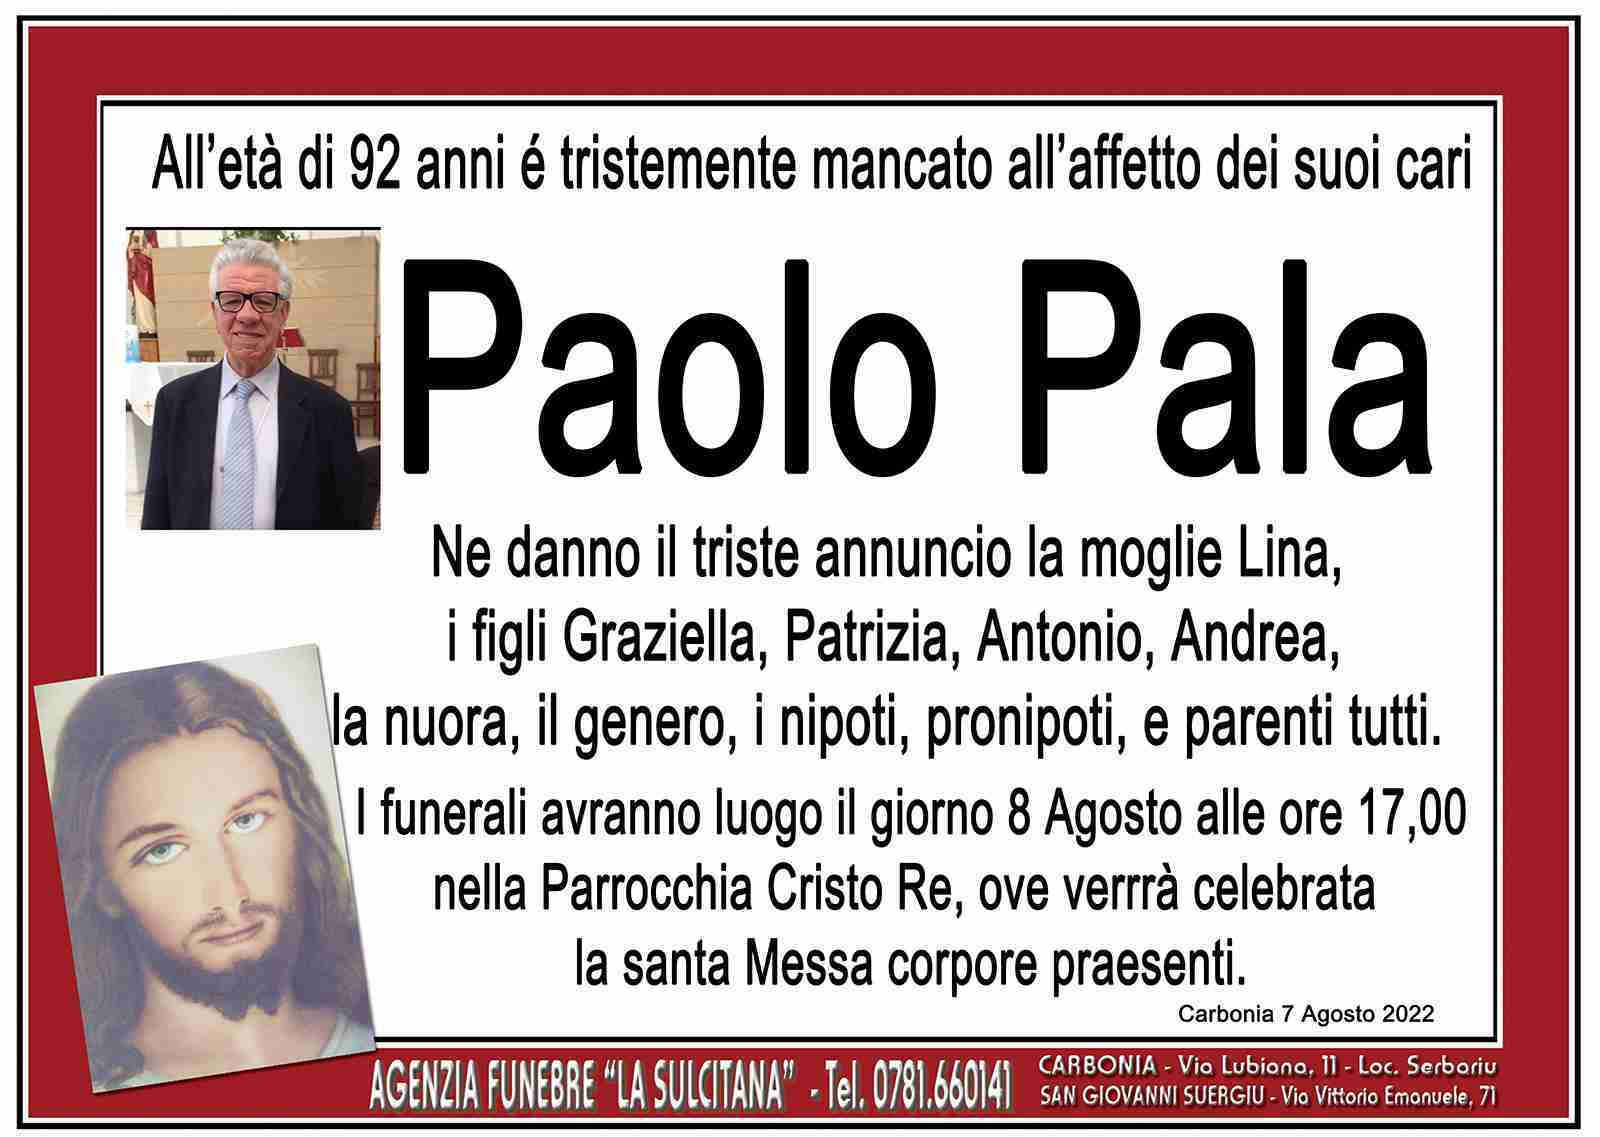 Paolo Pala